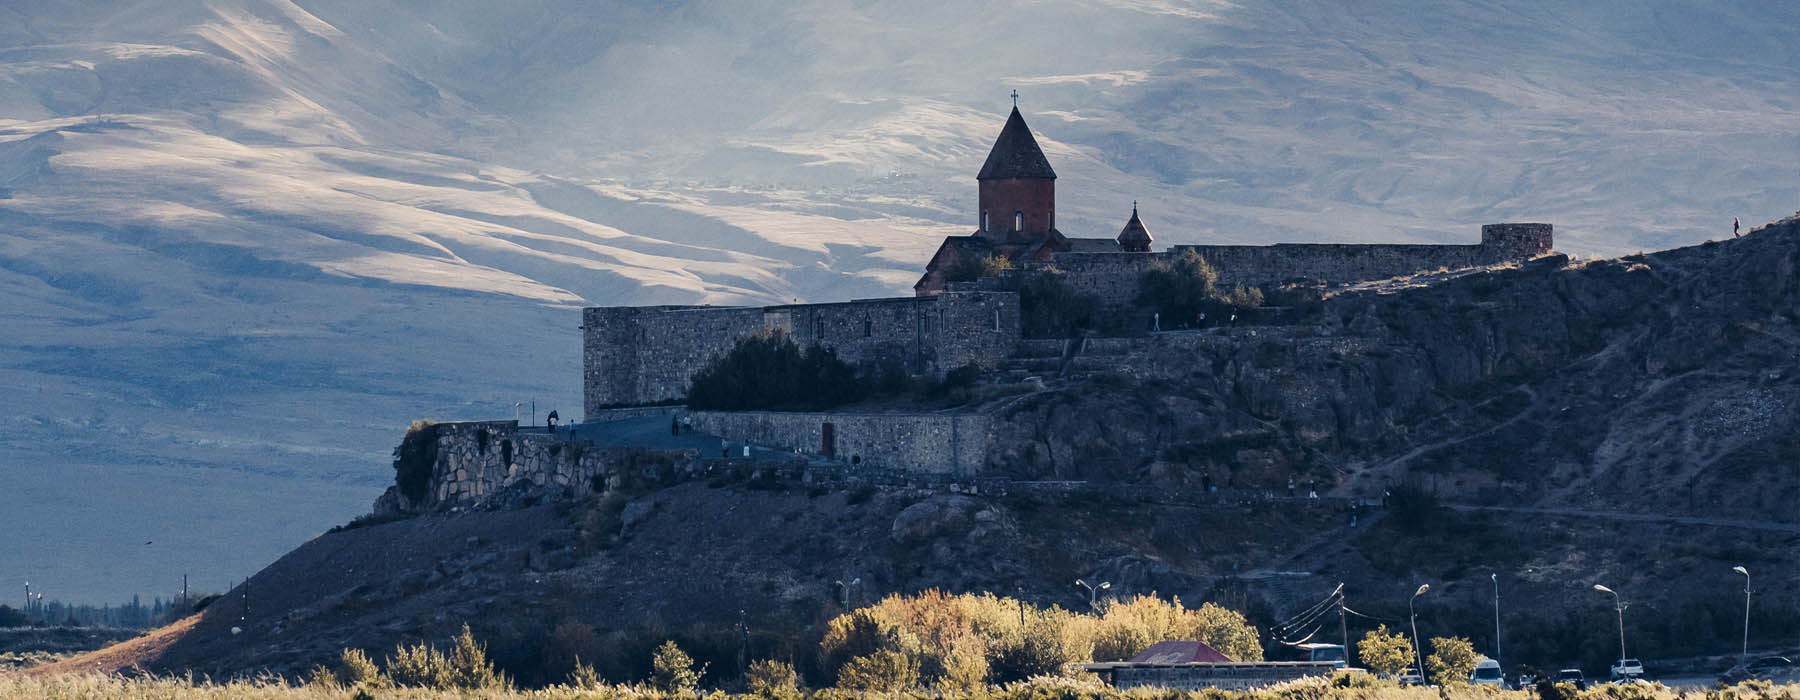 All our Armenia<br class="hidden-md hidden-lg" /> Near Frontiers Holidays